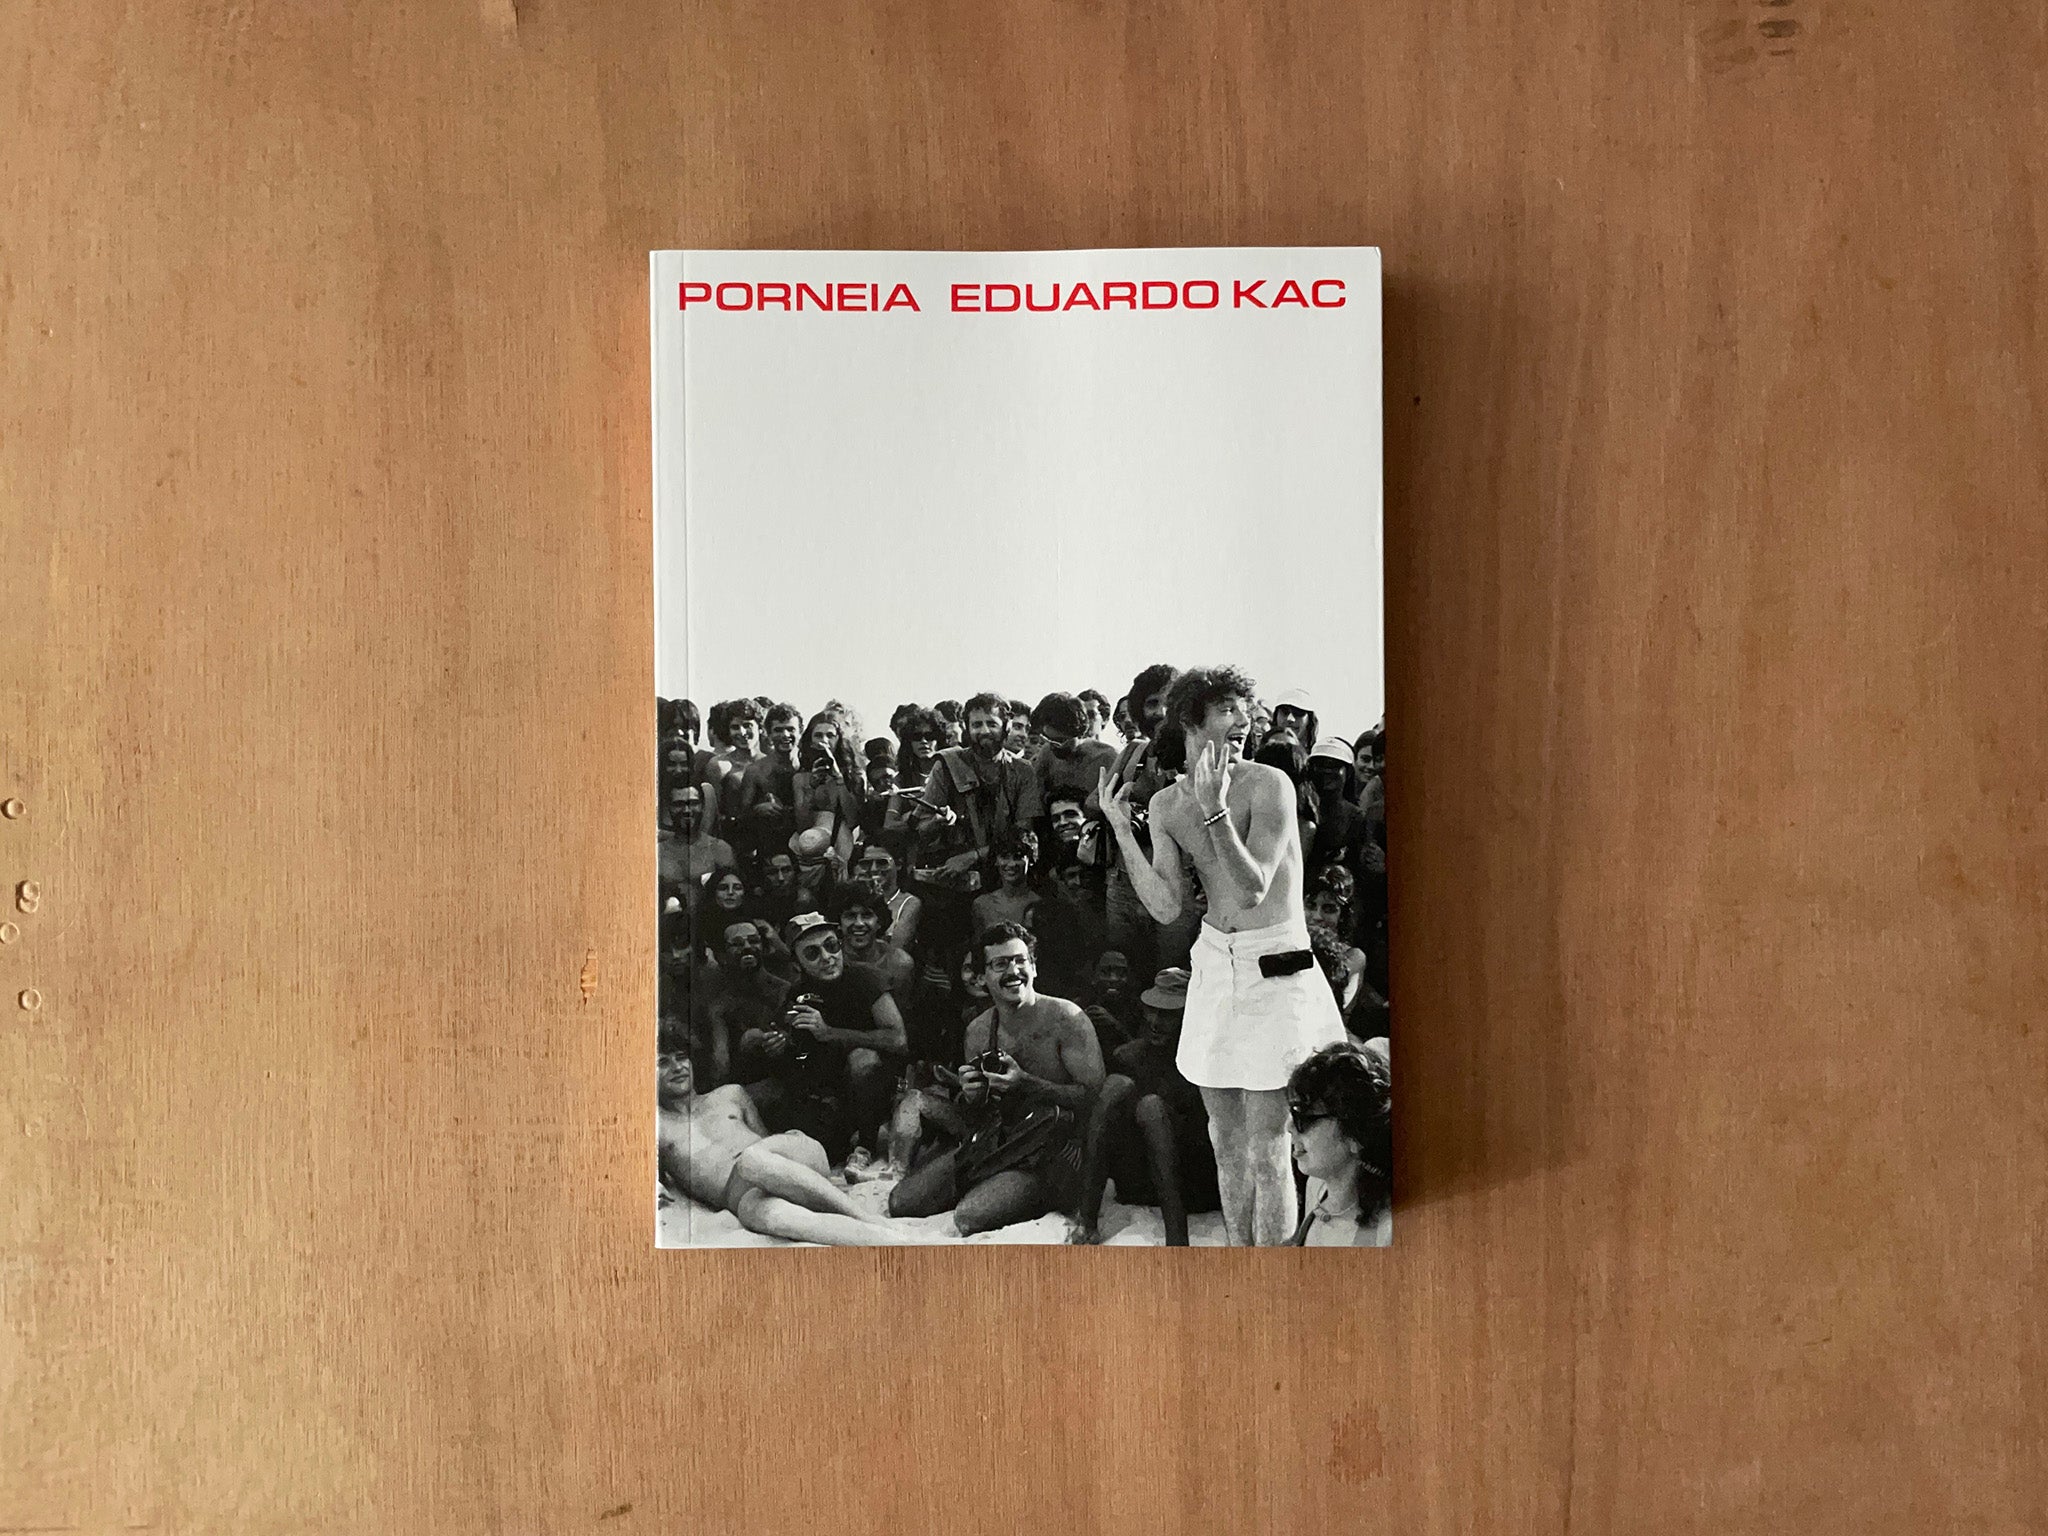 PORNEIA by Eduardo Kac